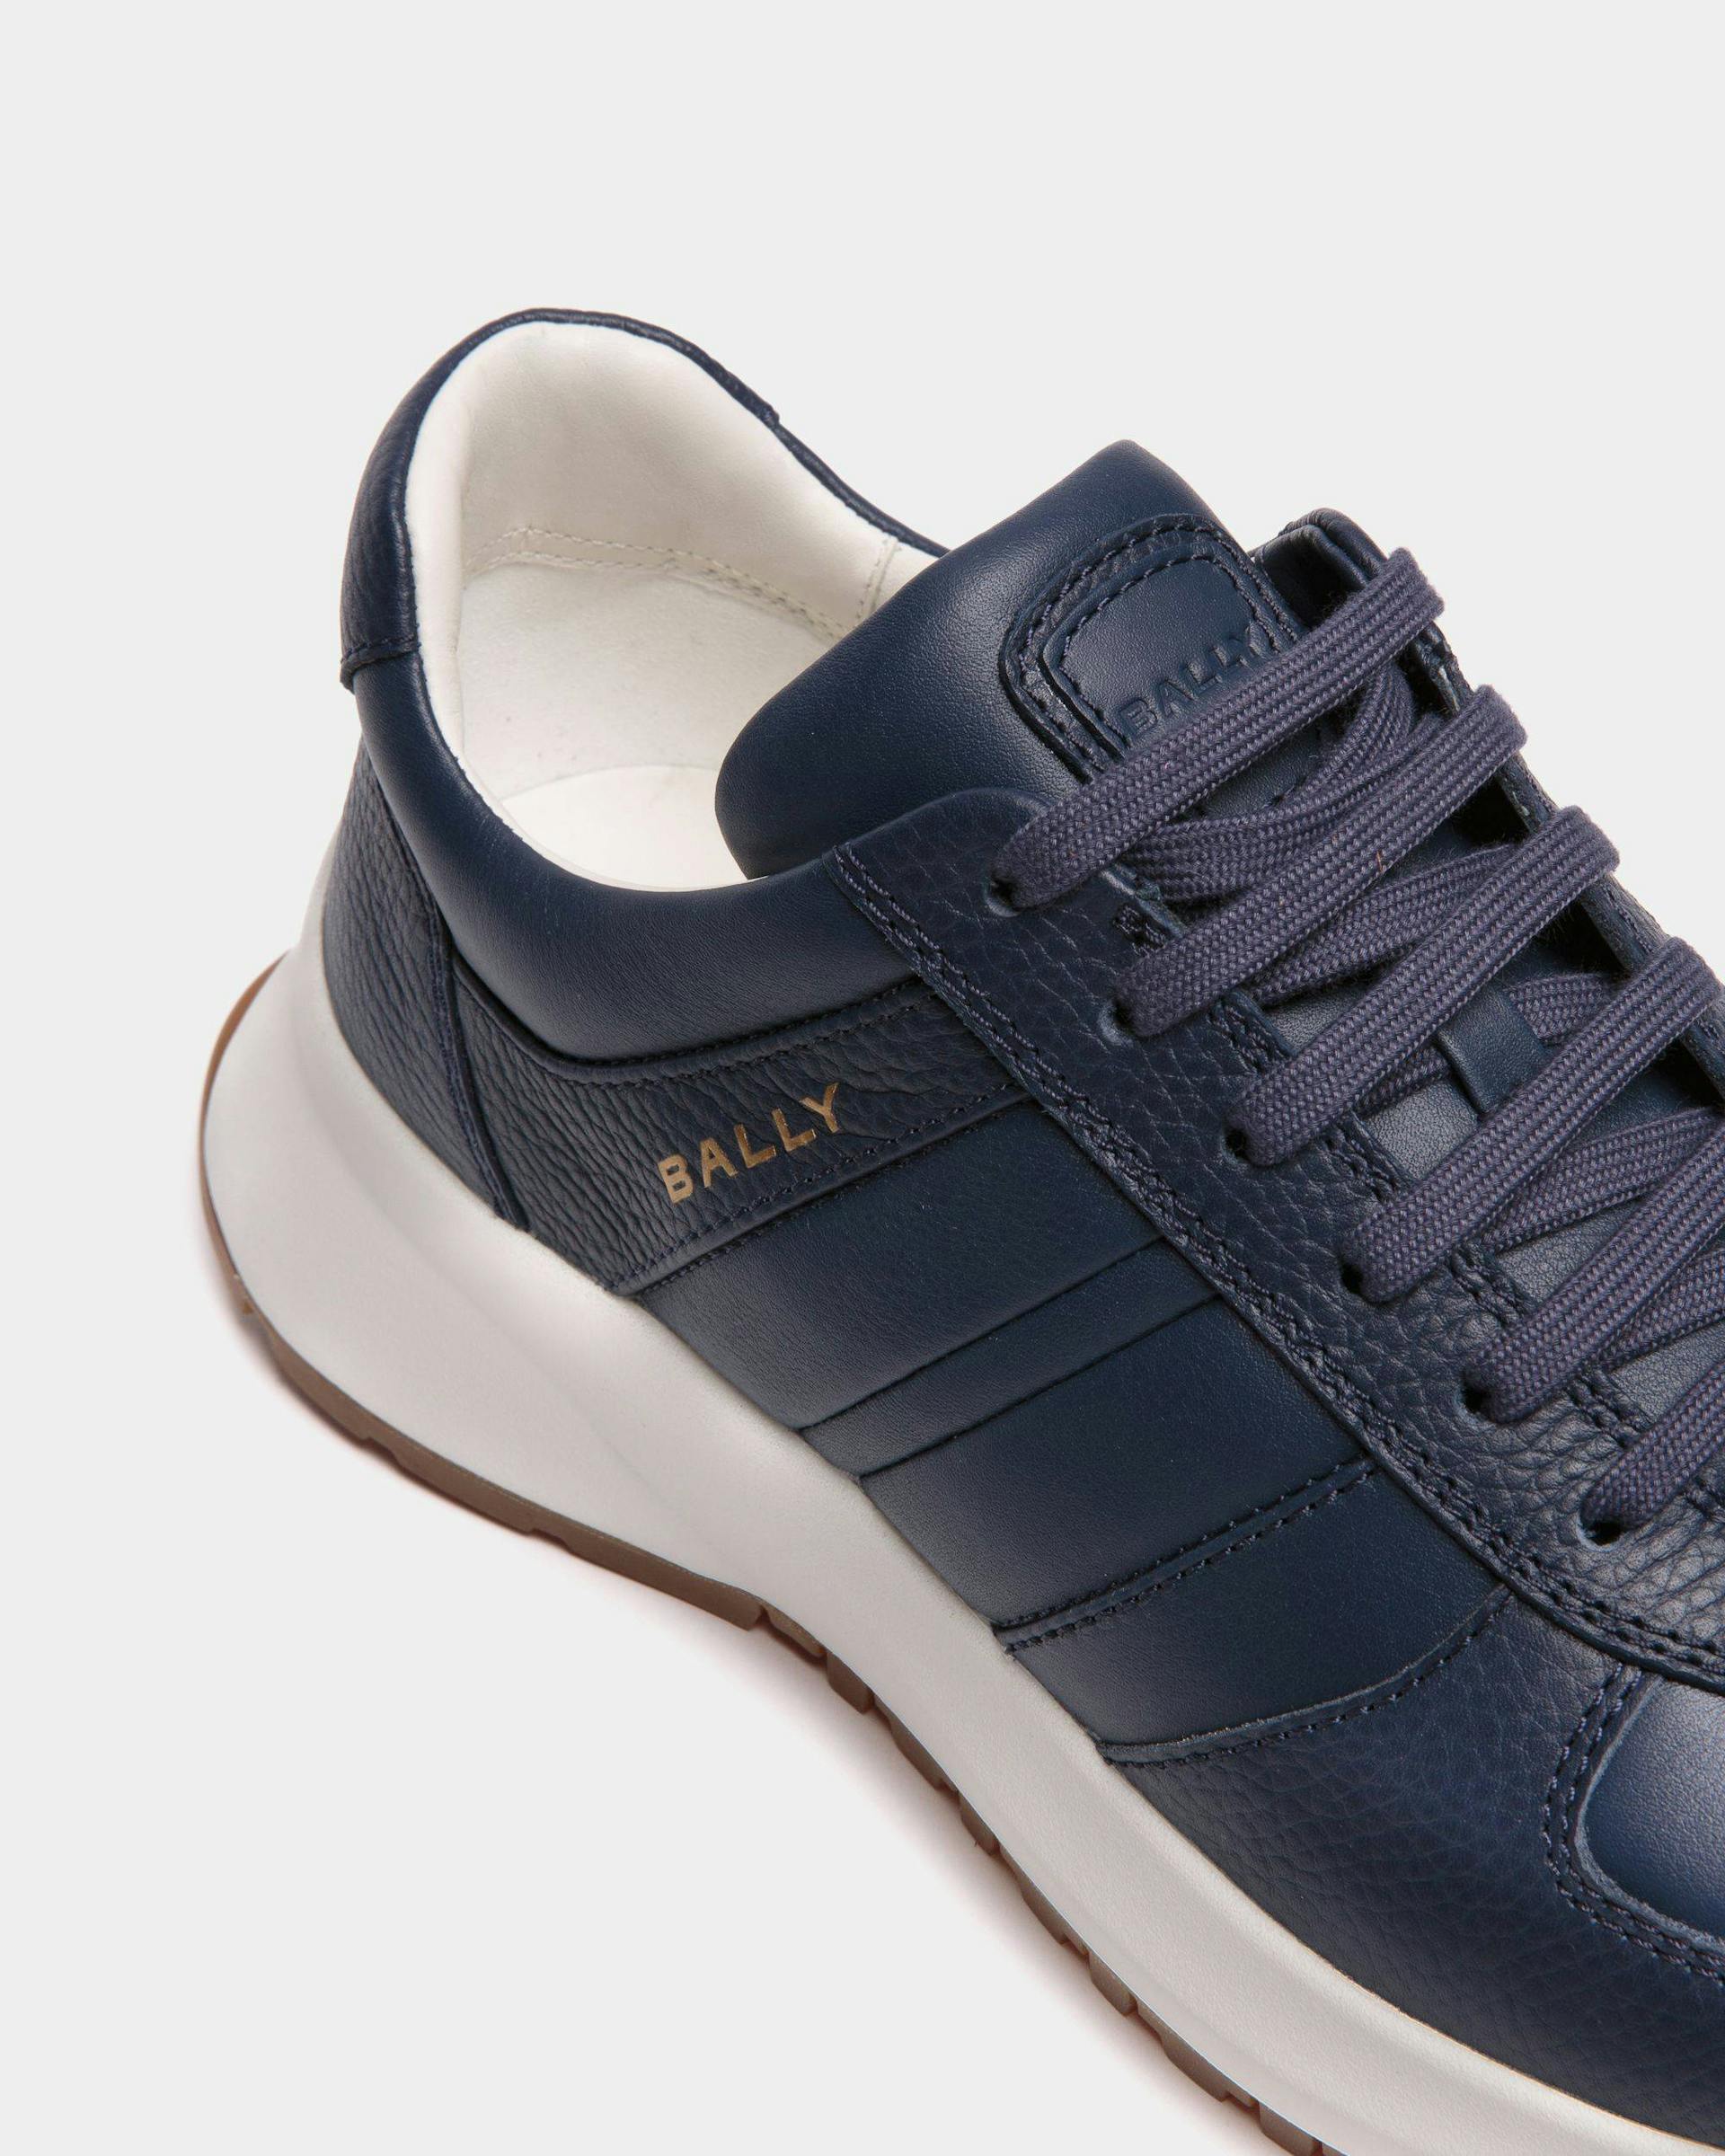 Men's Outline Sneaker In Blue Grained Leather | Bally | Still Life Detail